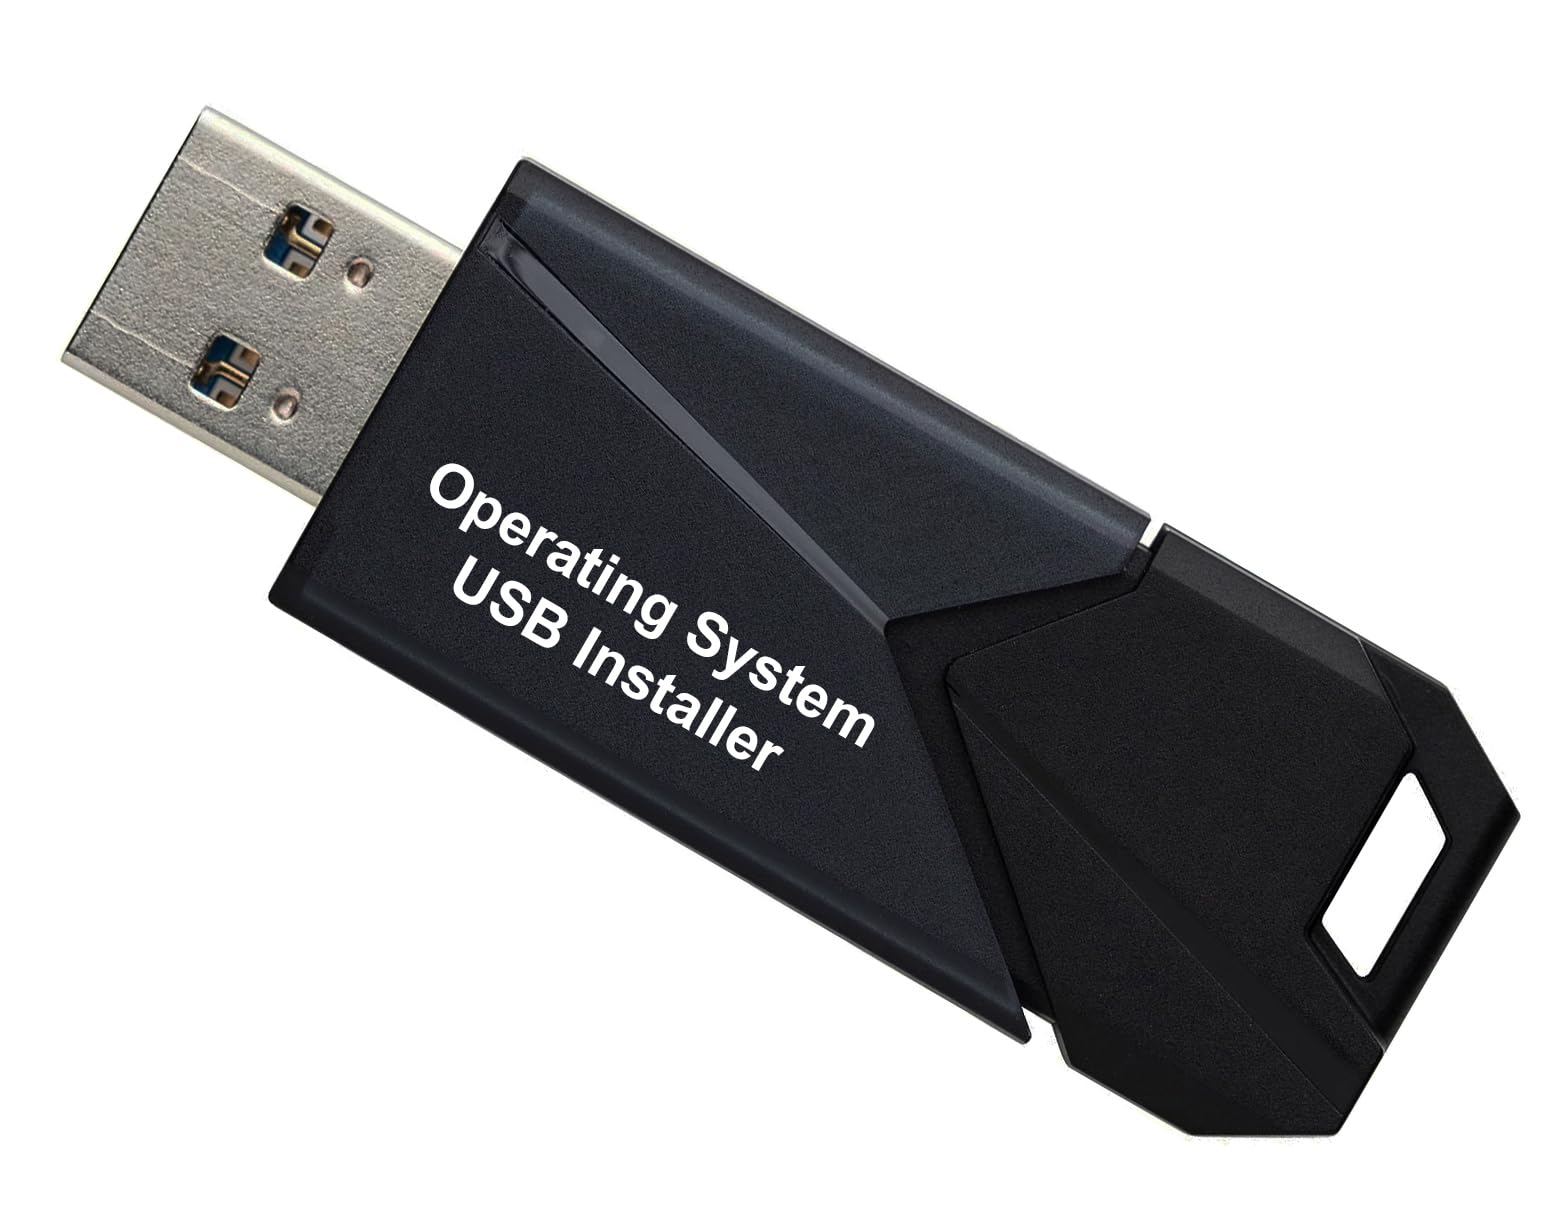 Bootable USB drive